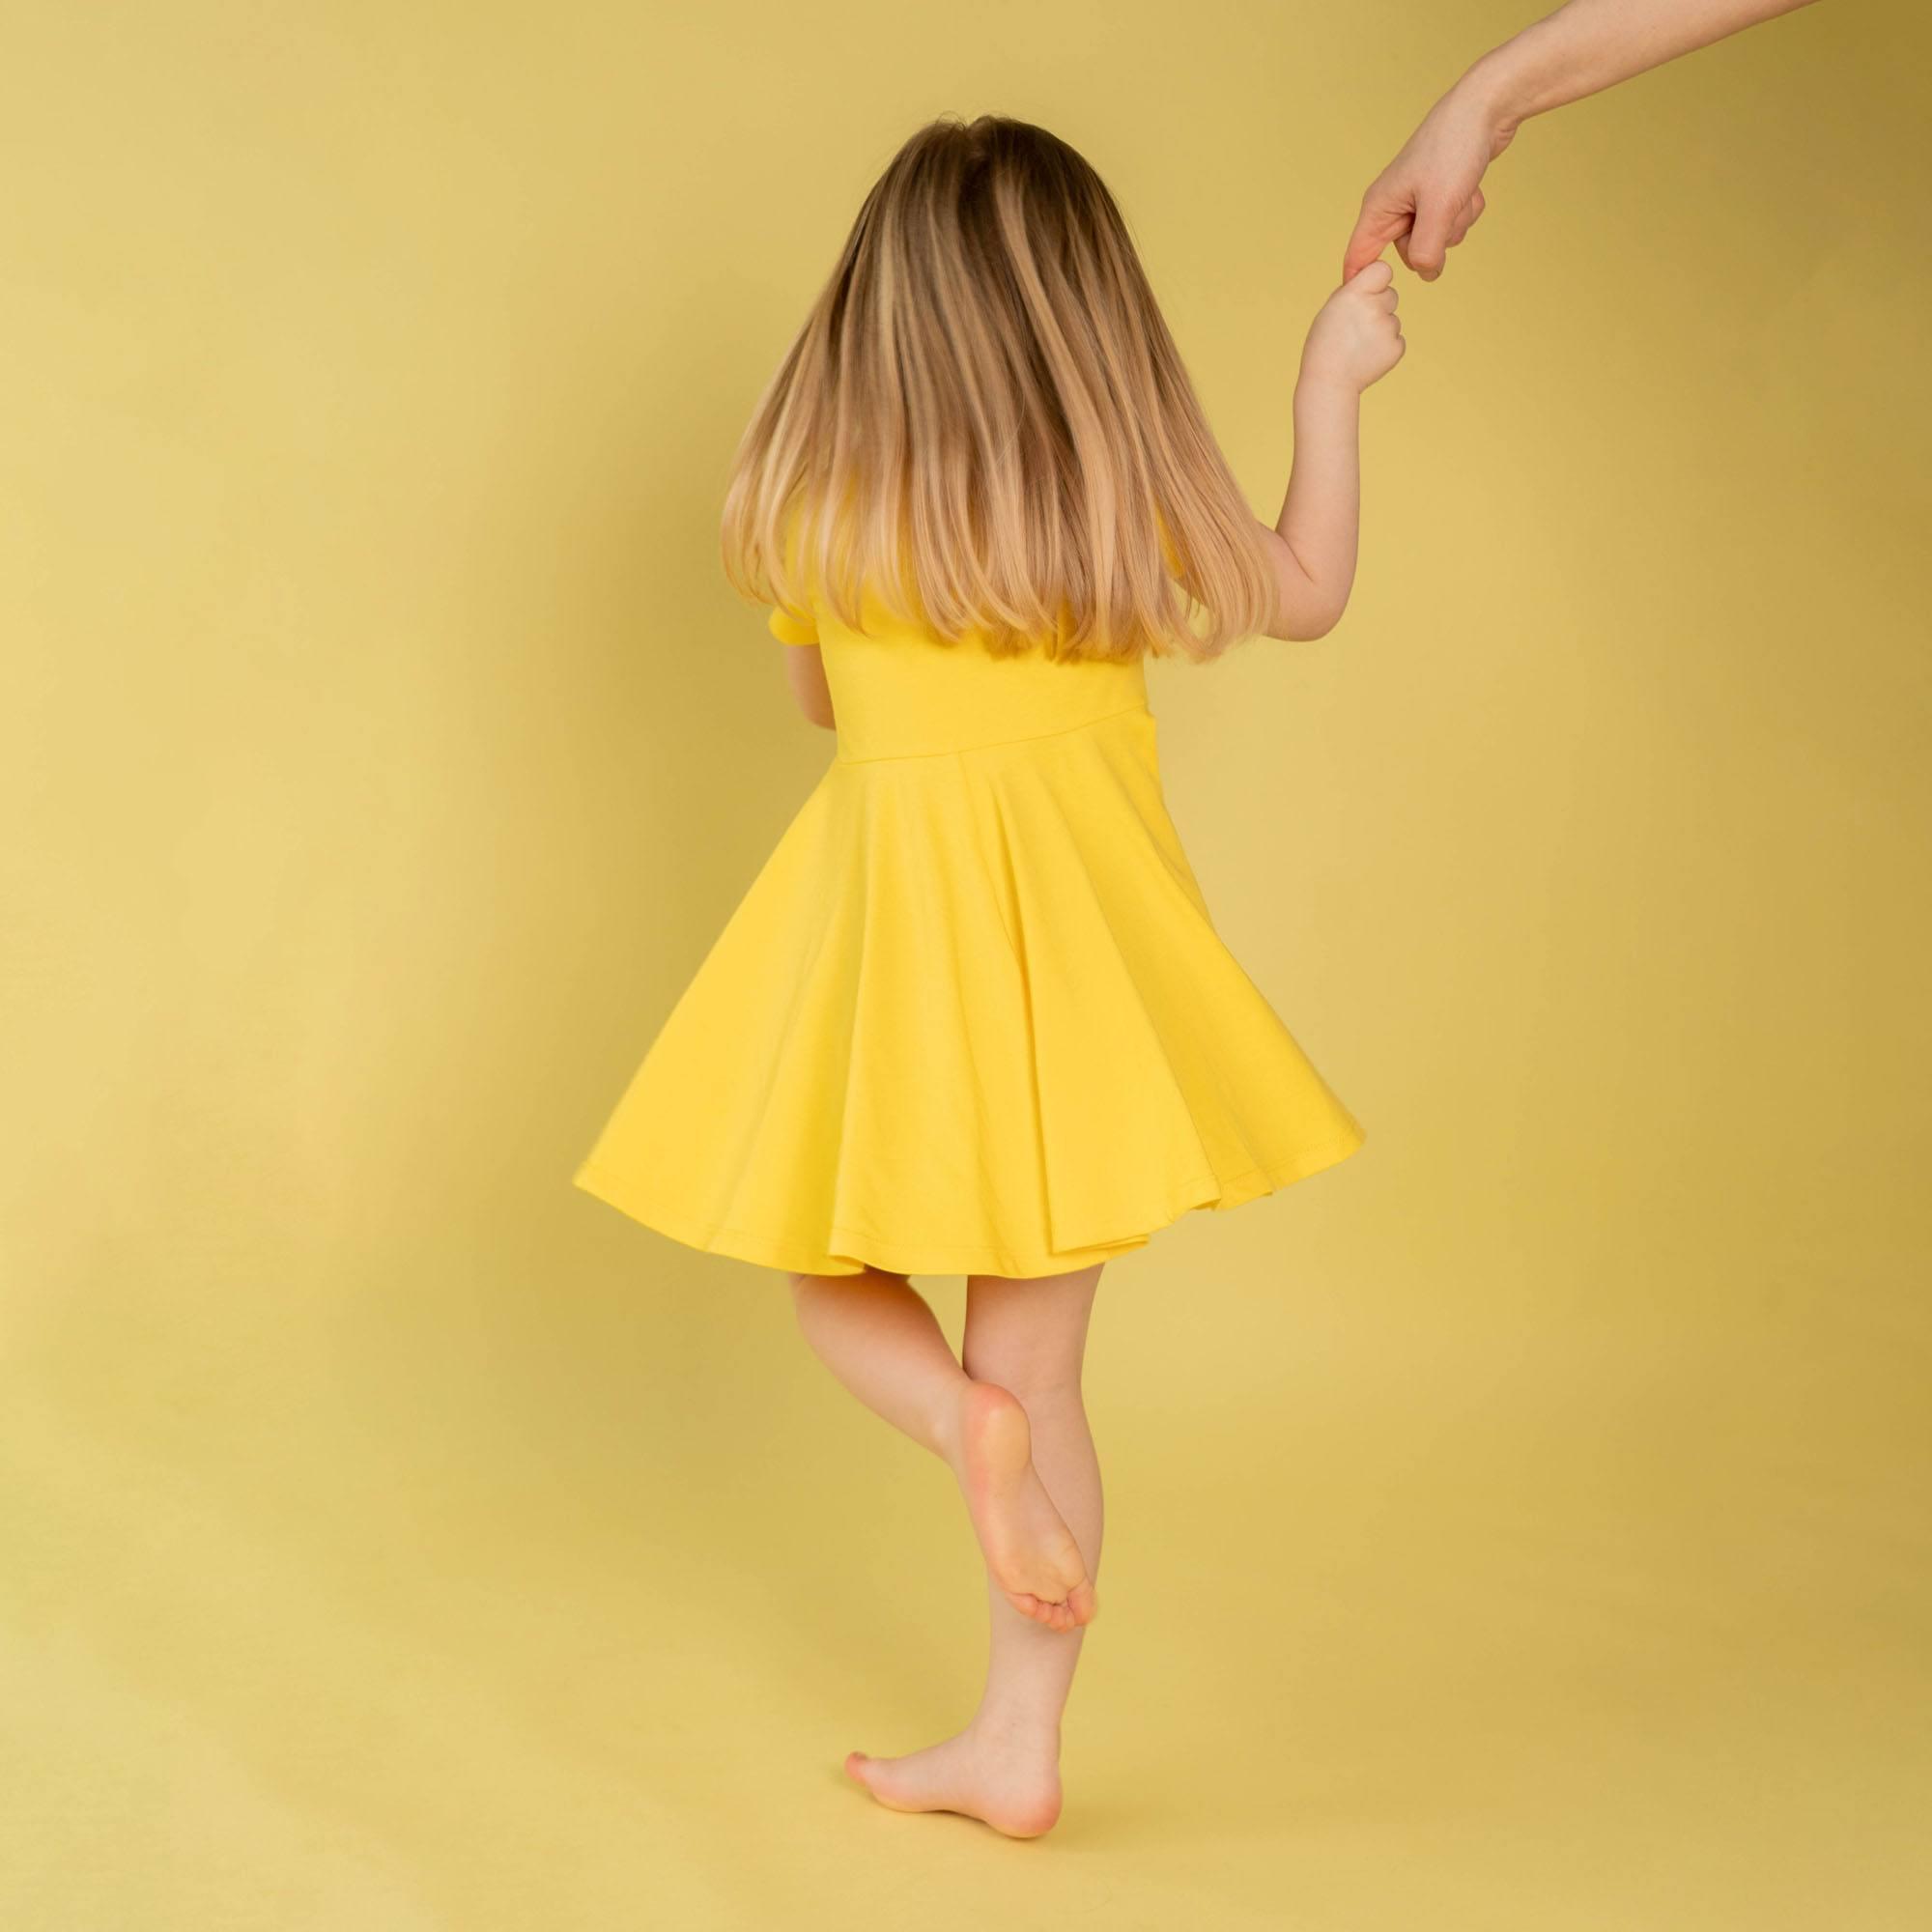 Żółta sukienka z krótkim rękawem